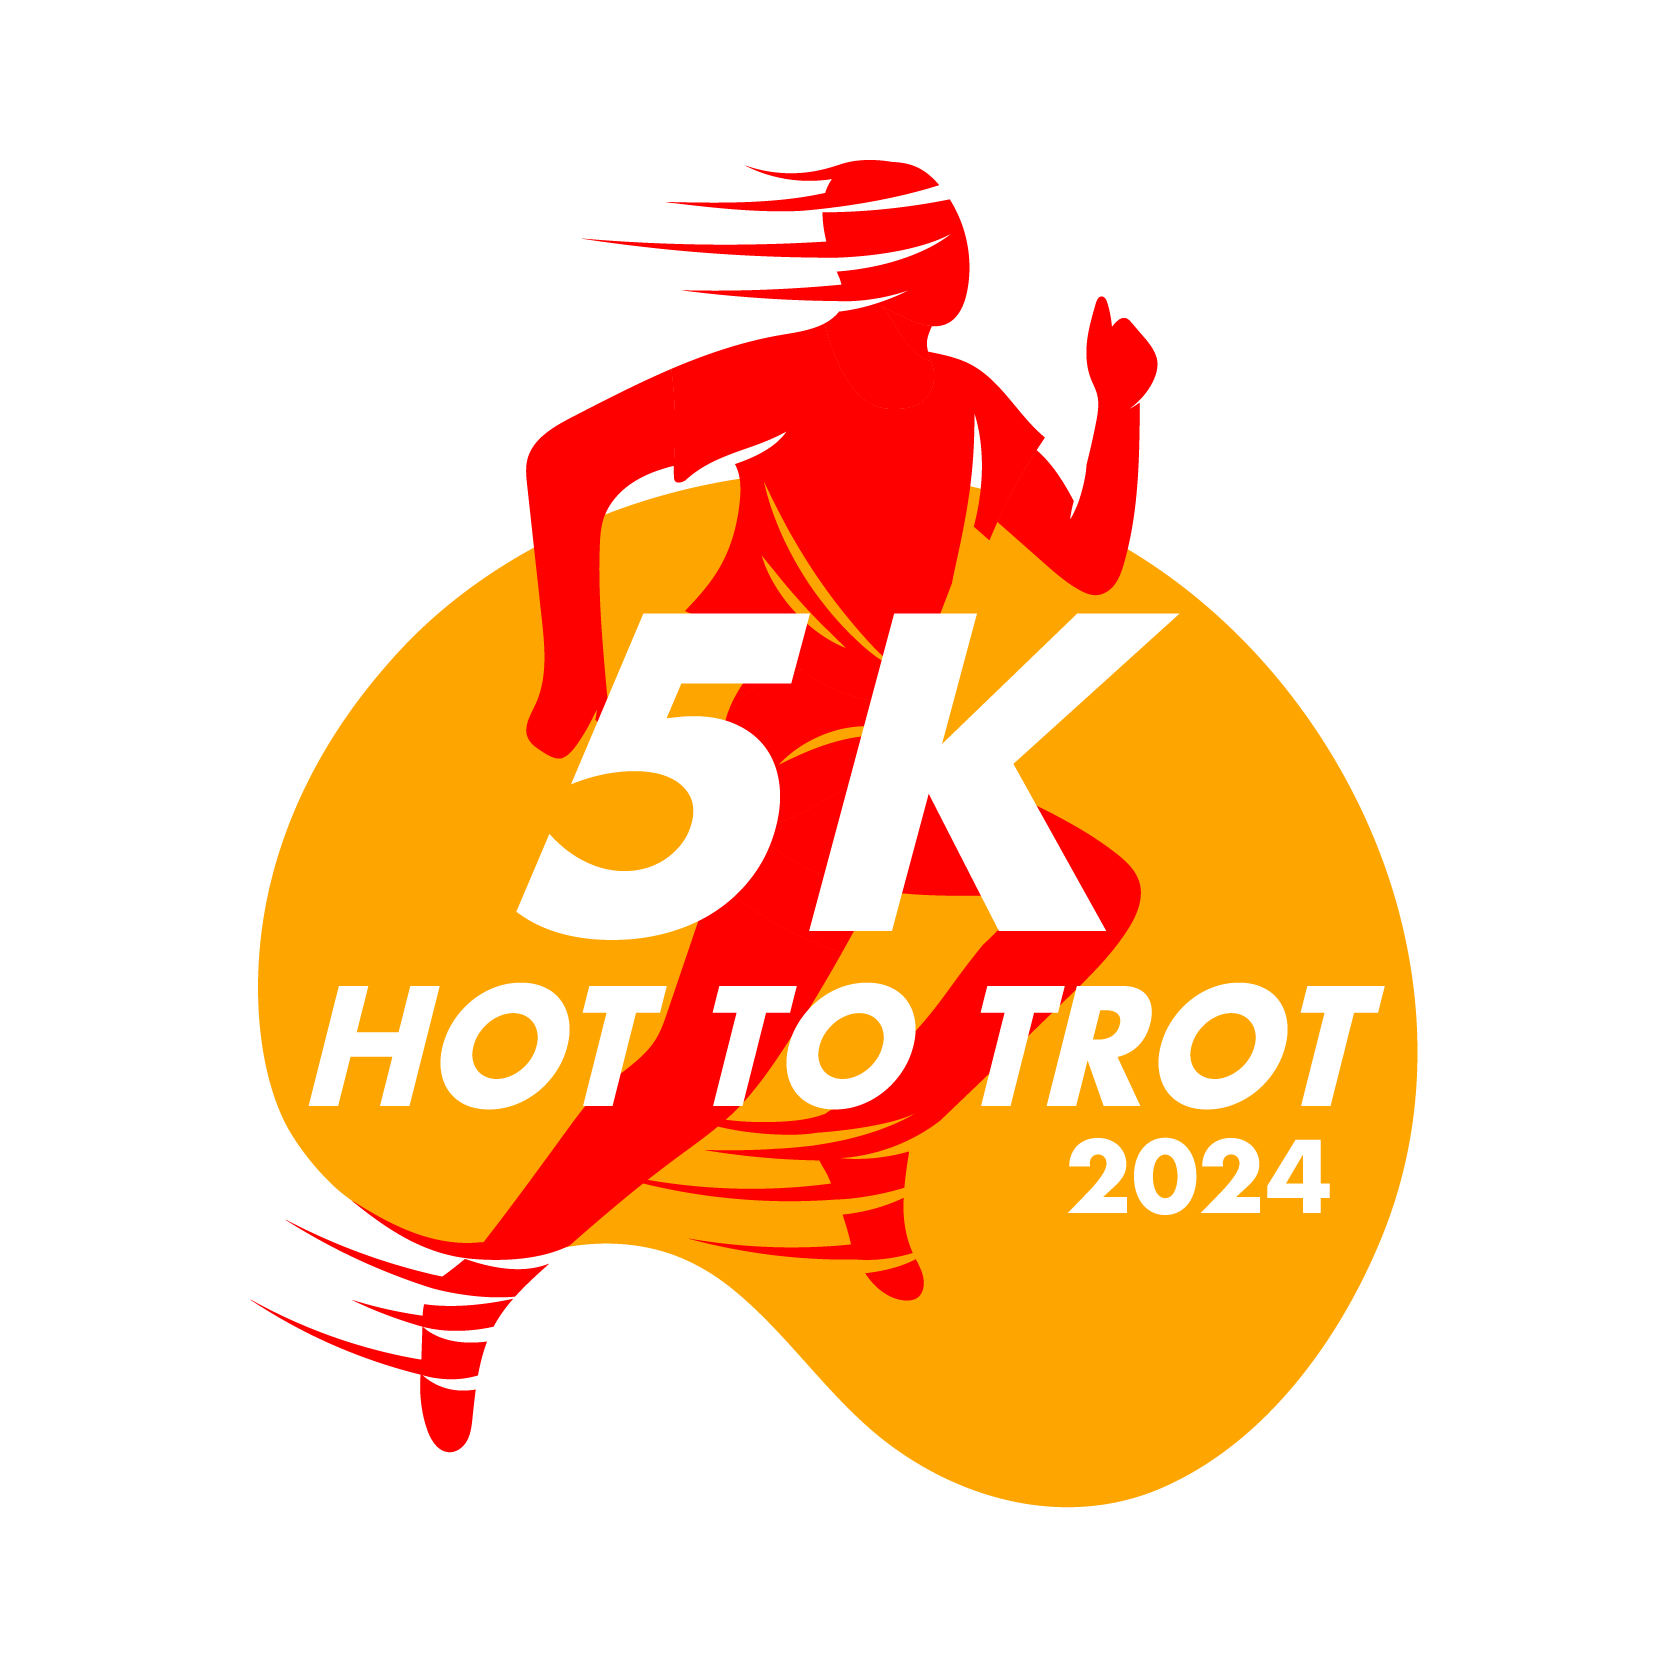 Hot to Trot 5K 2022 logo